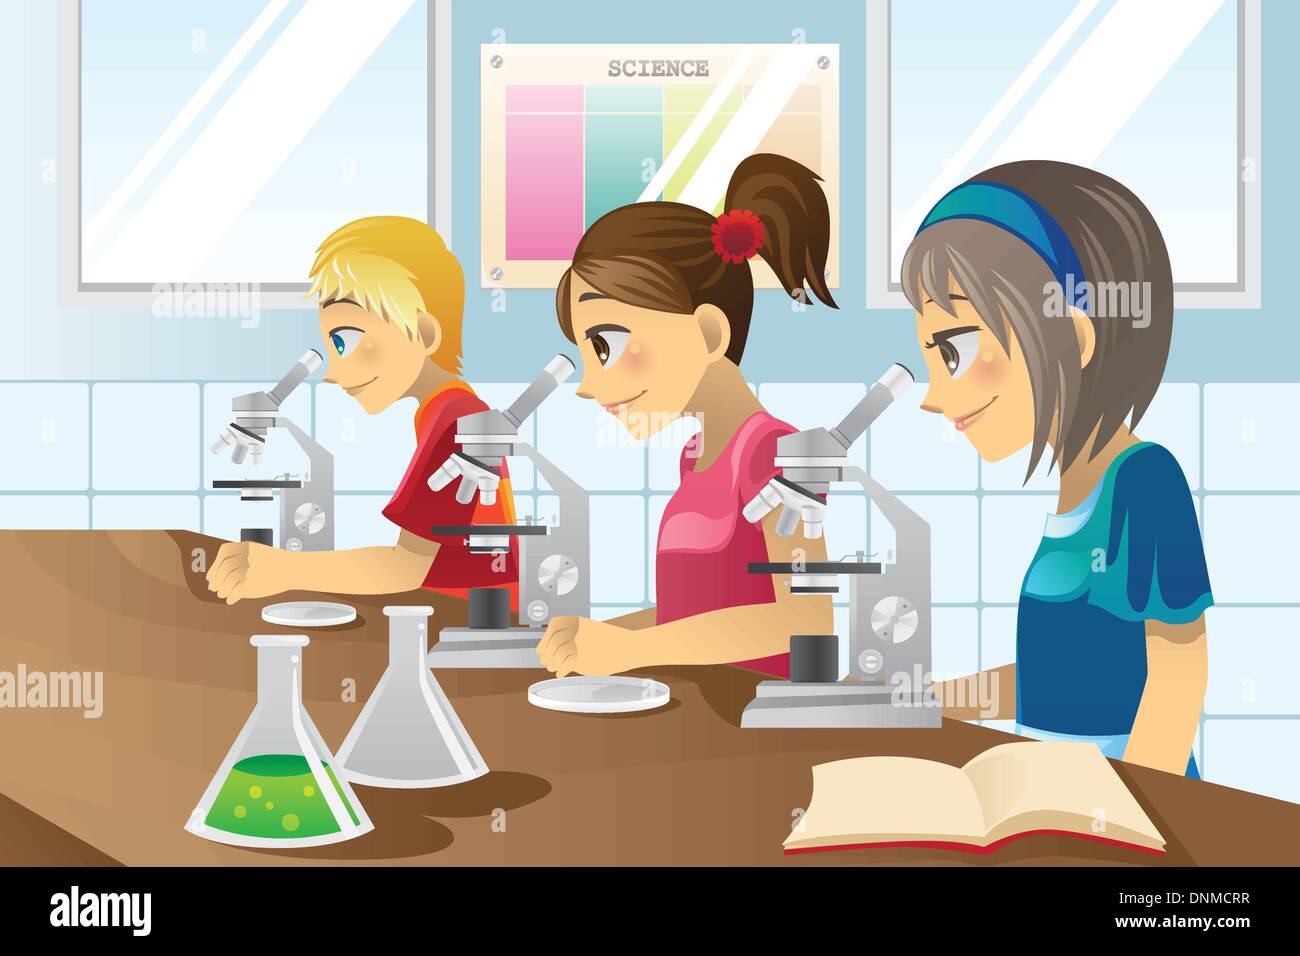 Un vecteur illustration d'enfants étudiant dans un laboratoire scientifique Illustration de Vecteur